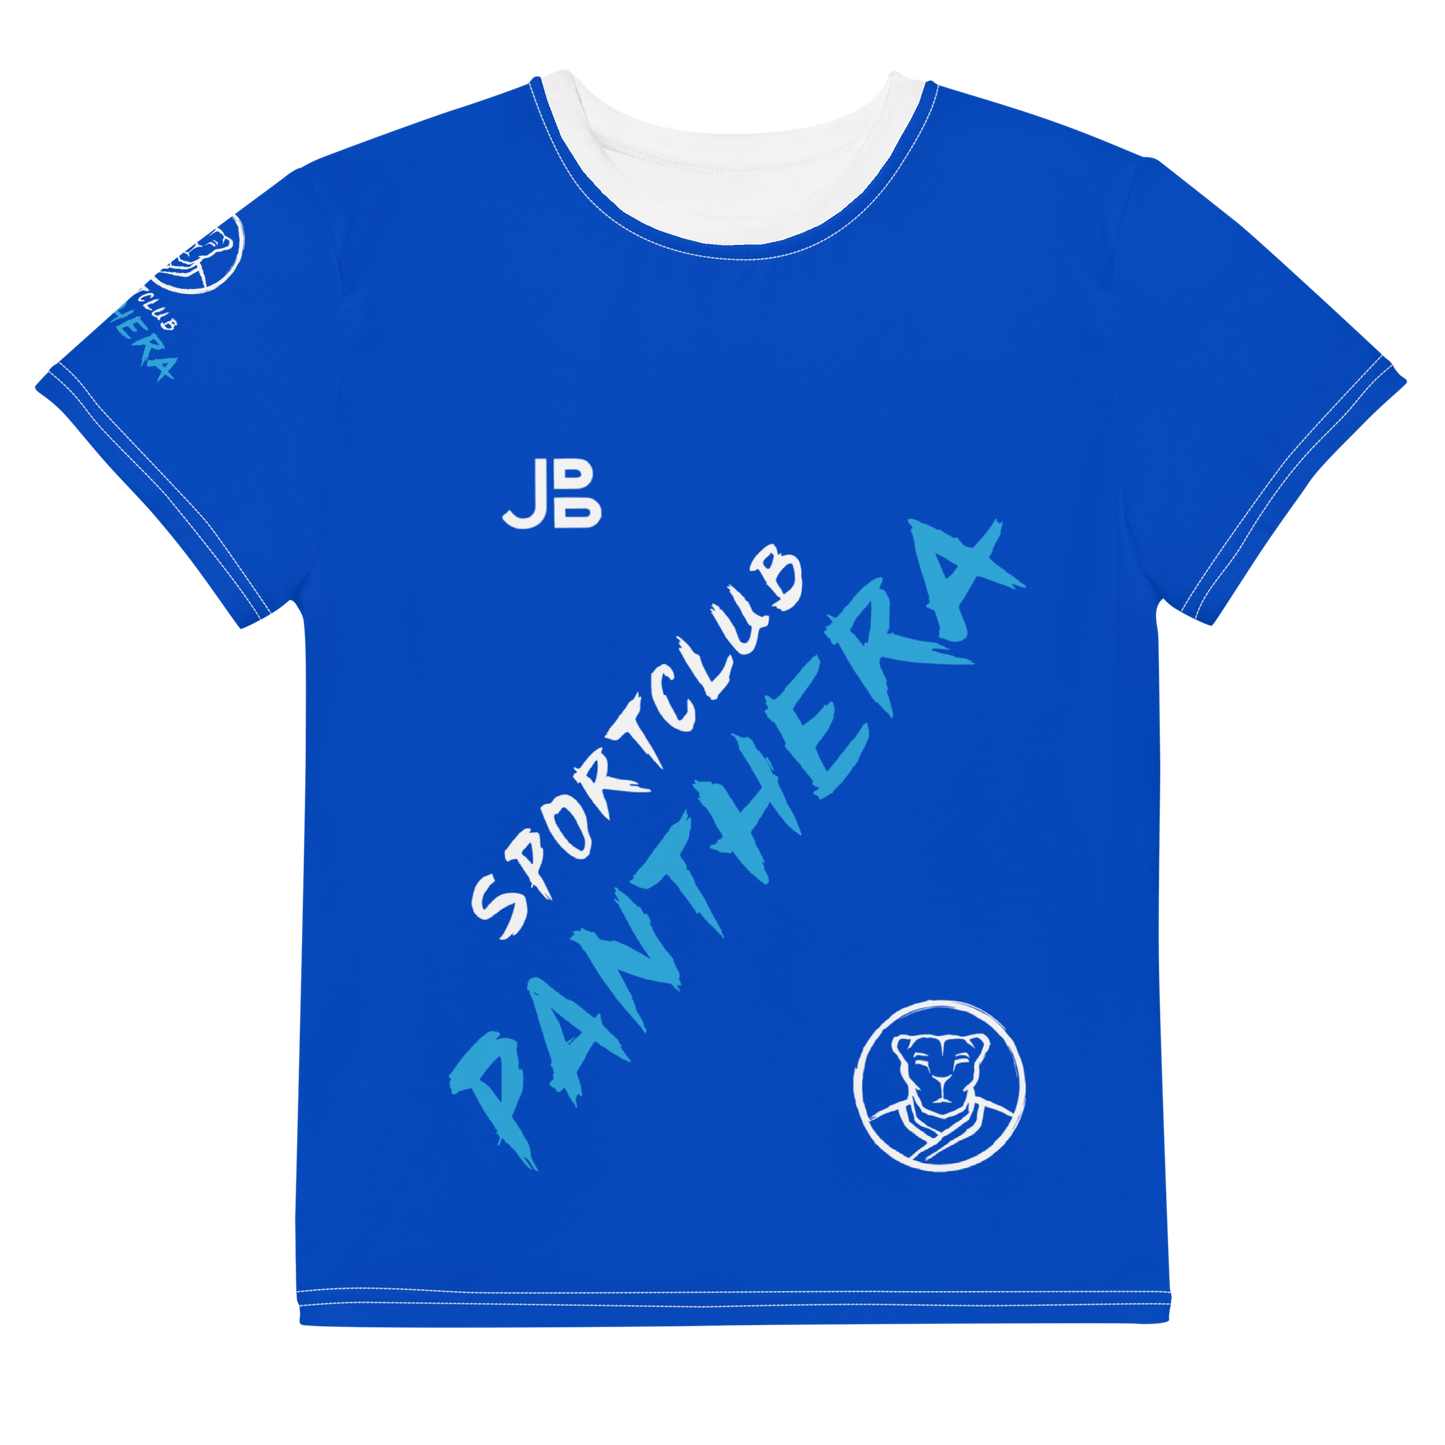 SPORTCLUB PANTHERA - Jersey-Shirt Youth Taekwondo